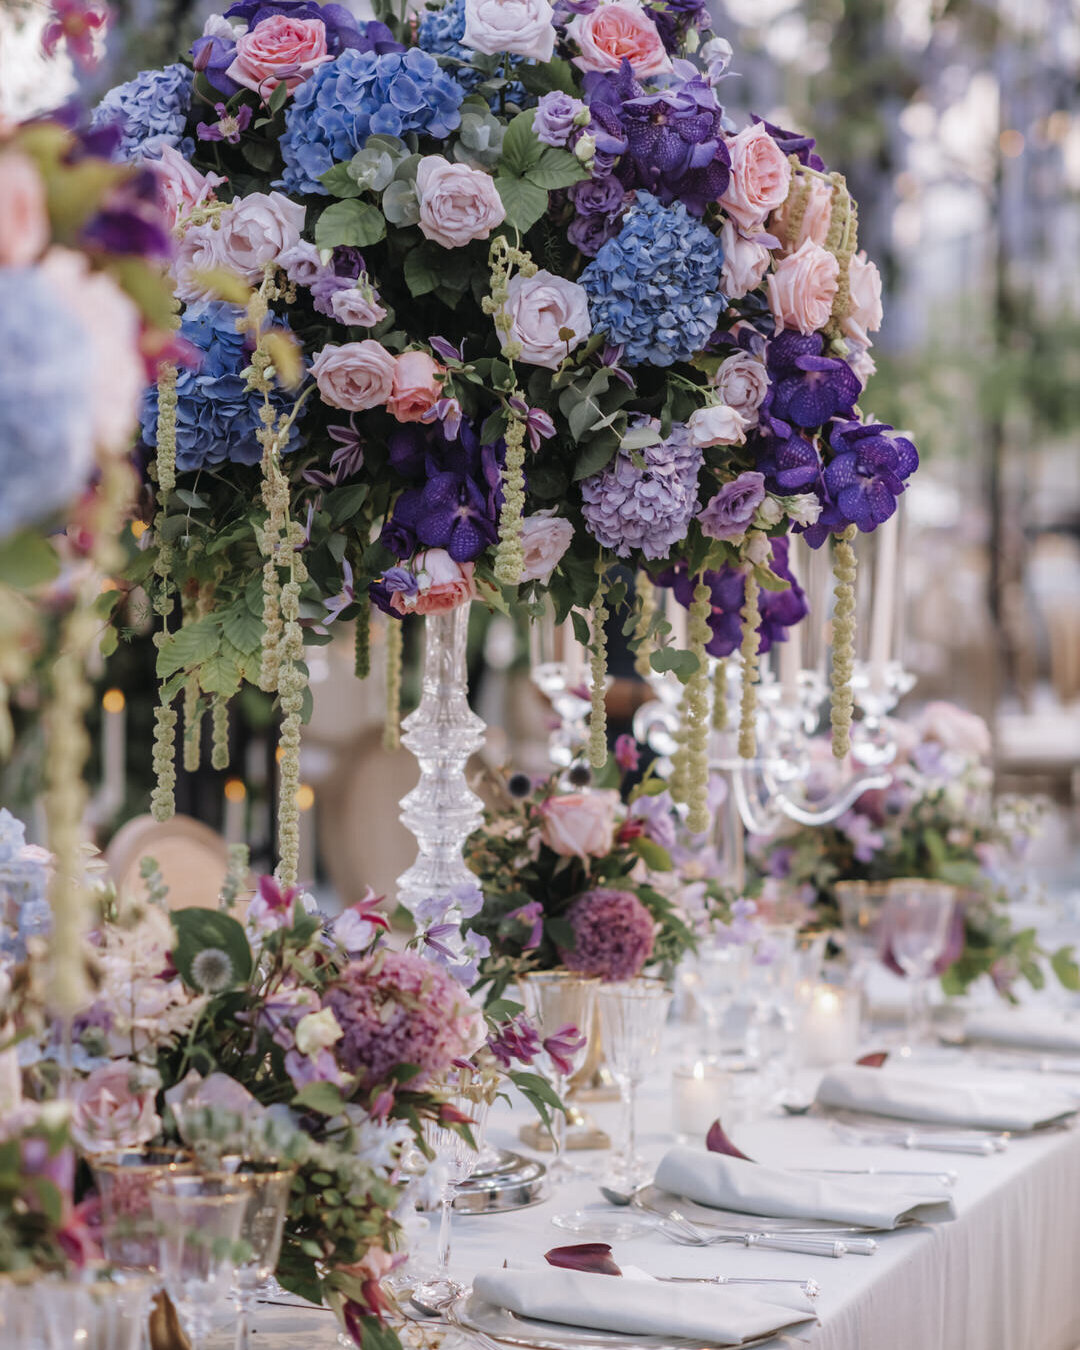 Paris Destination Wedding at Chateau de Chantilly by Alejandra Poupel Events flowers dinner table 8